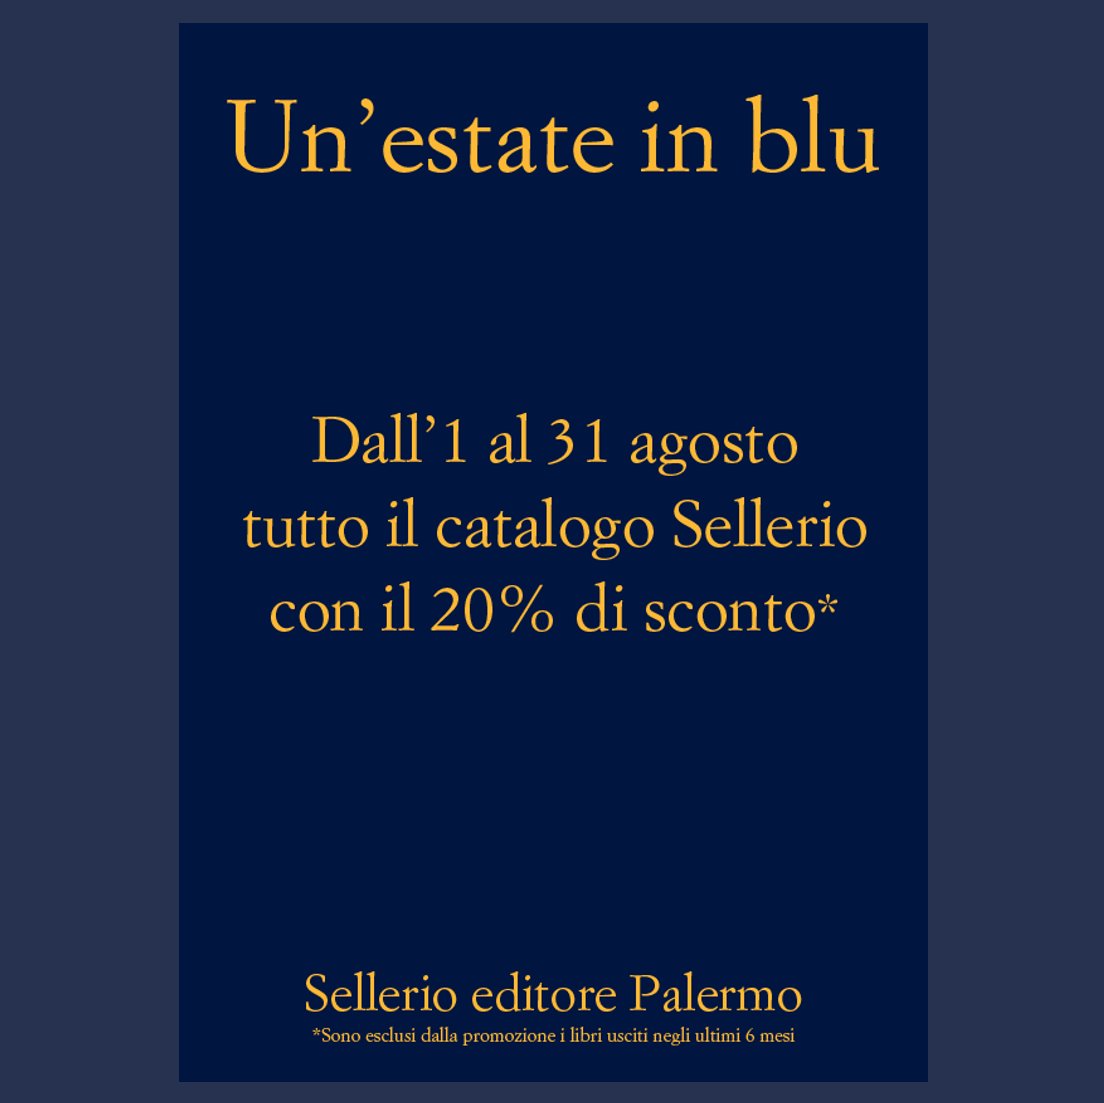 Sellerio editore on X: Quale libro blu manca alla vostra collezione? Tutto  il catalogo #Sellerio con il 20% di sconto dal 1 al 31 agosto. Buona estate  e tante buone letture! *In